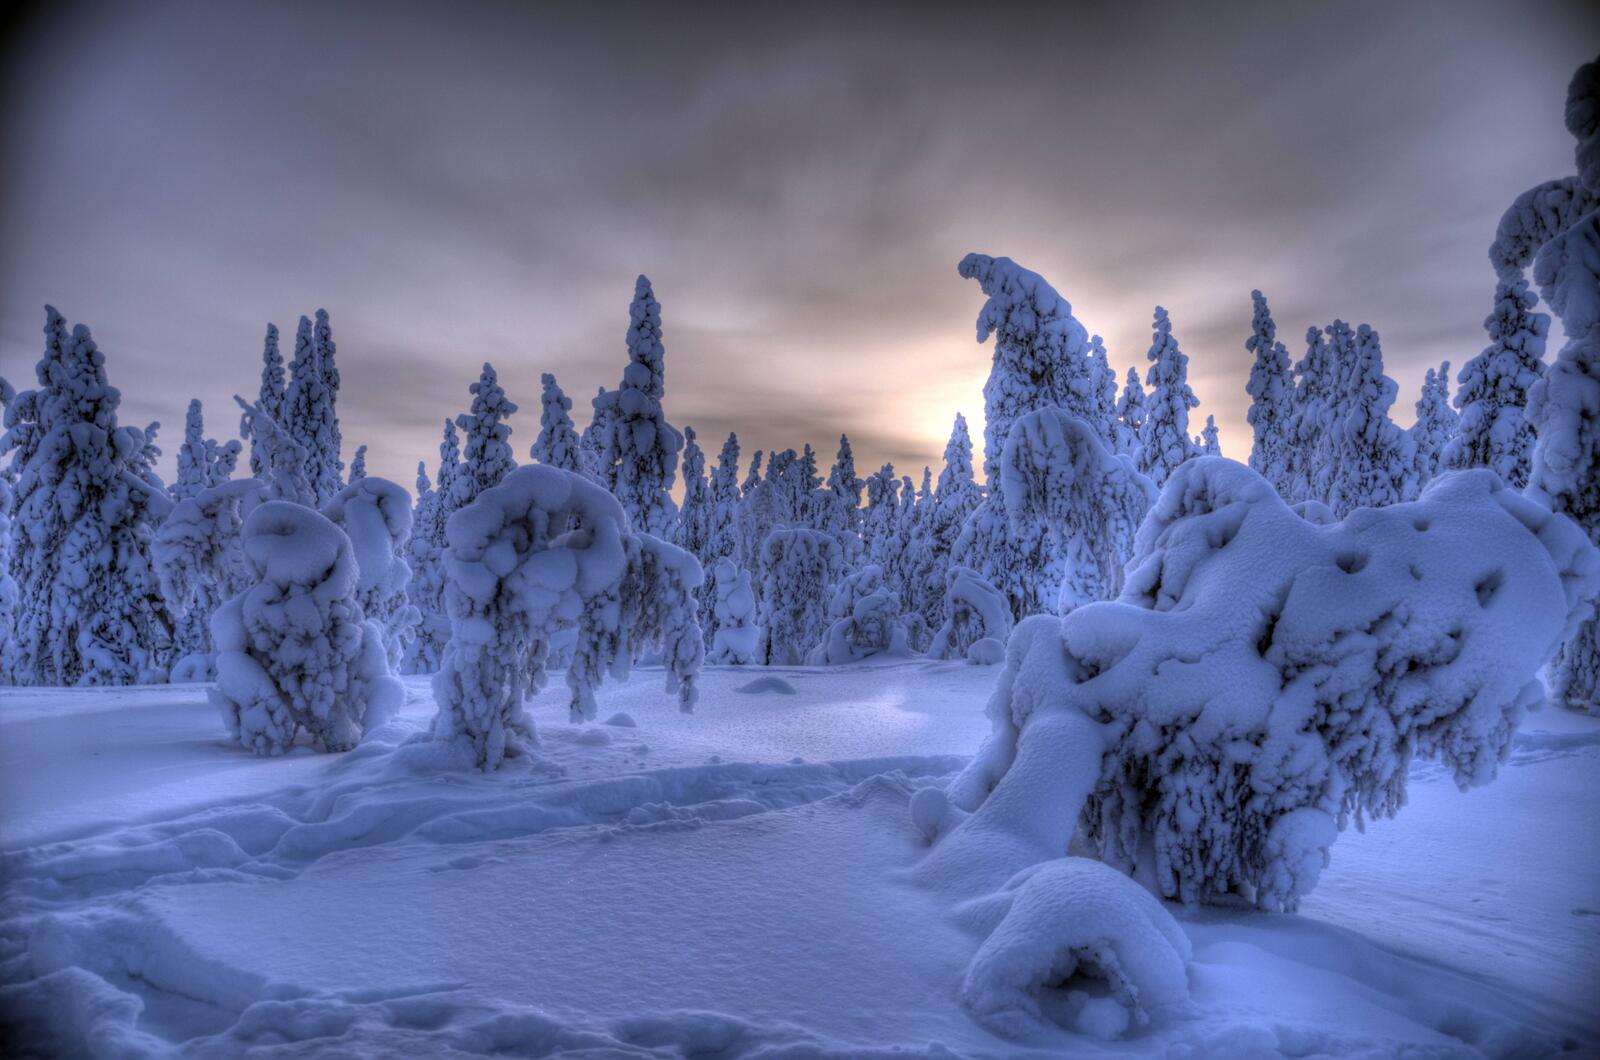 Обои Финляндия зима сугробы на рабочий стол